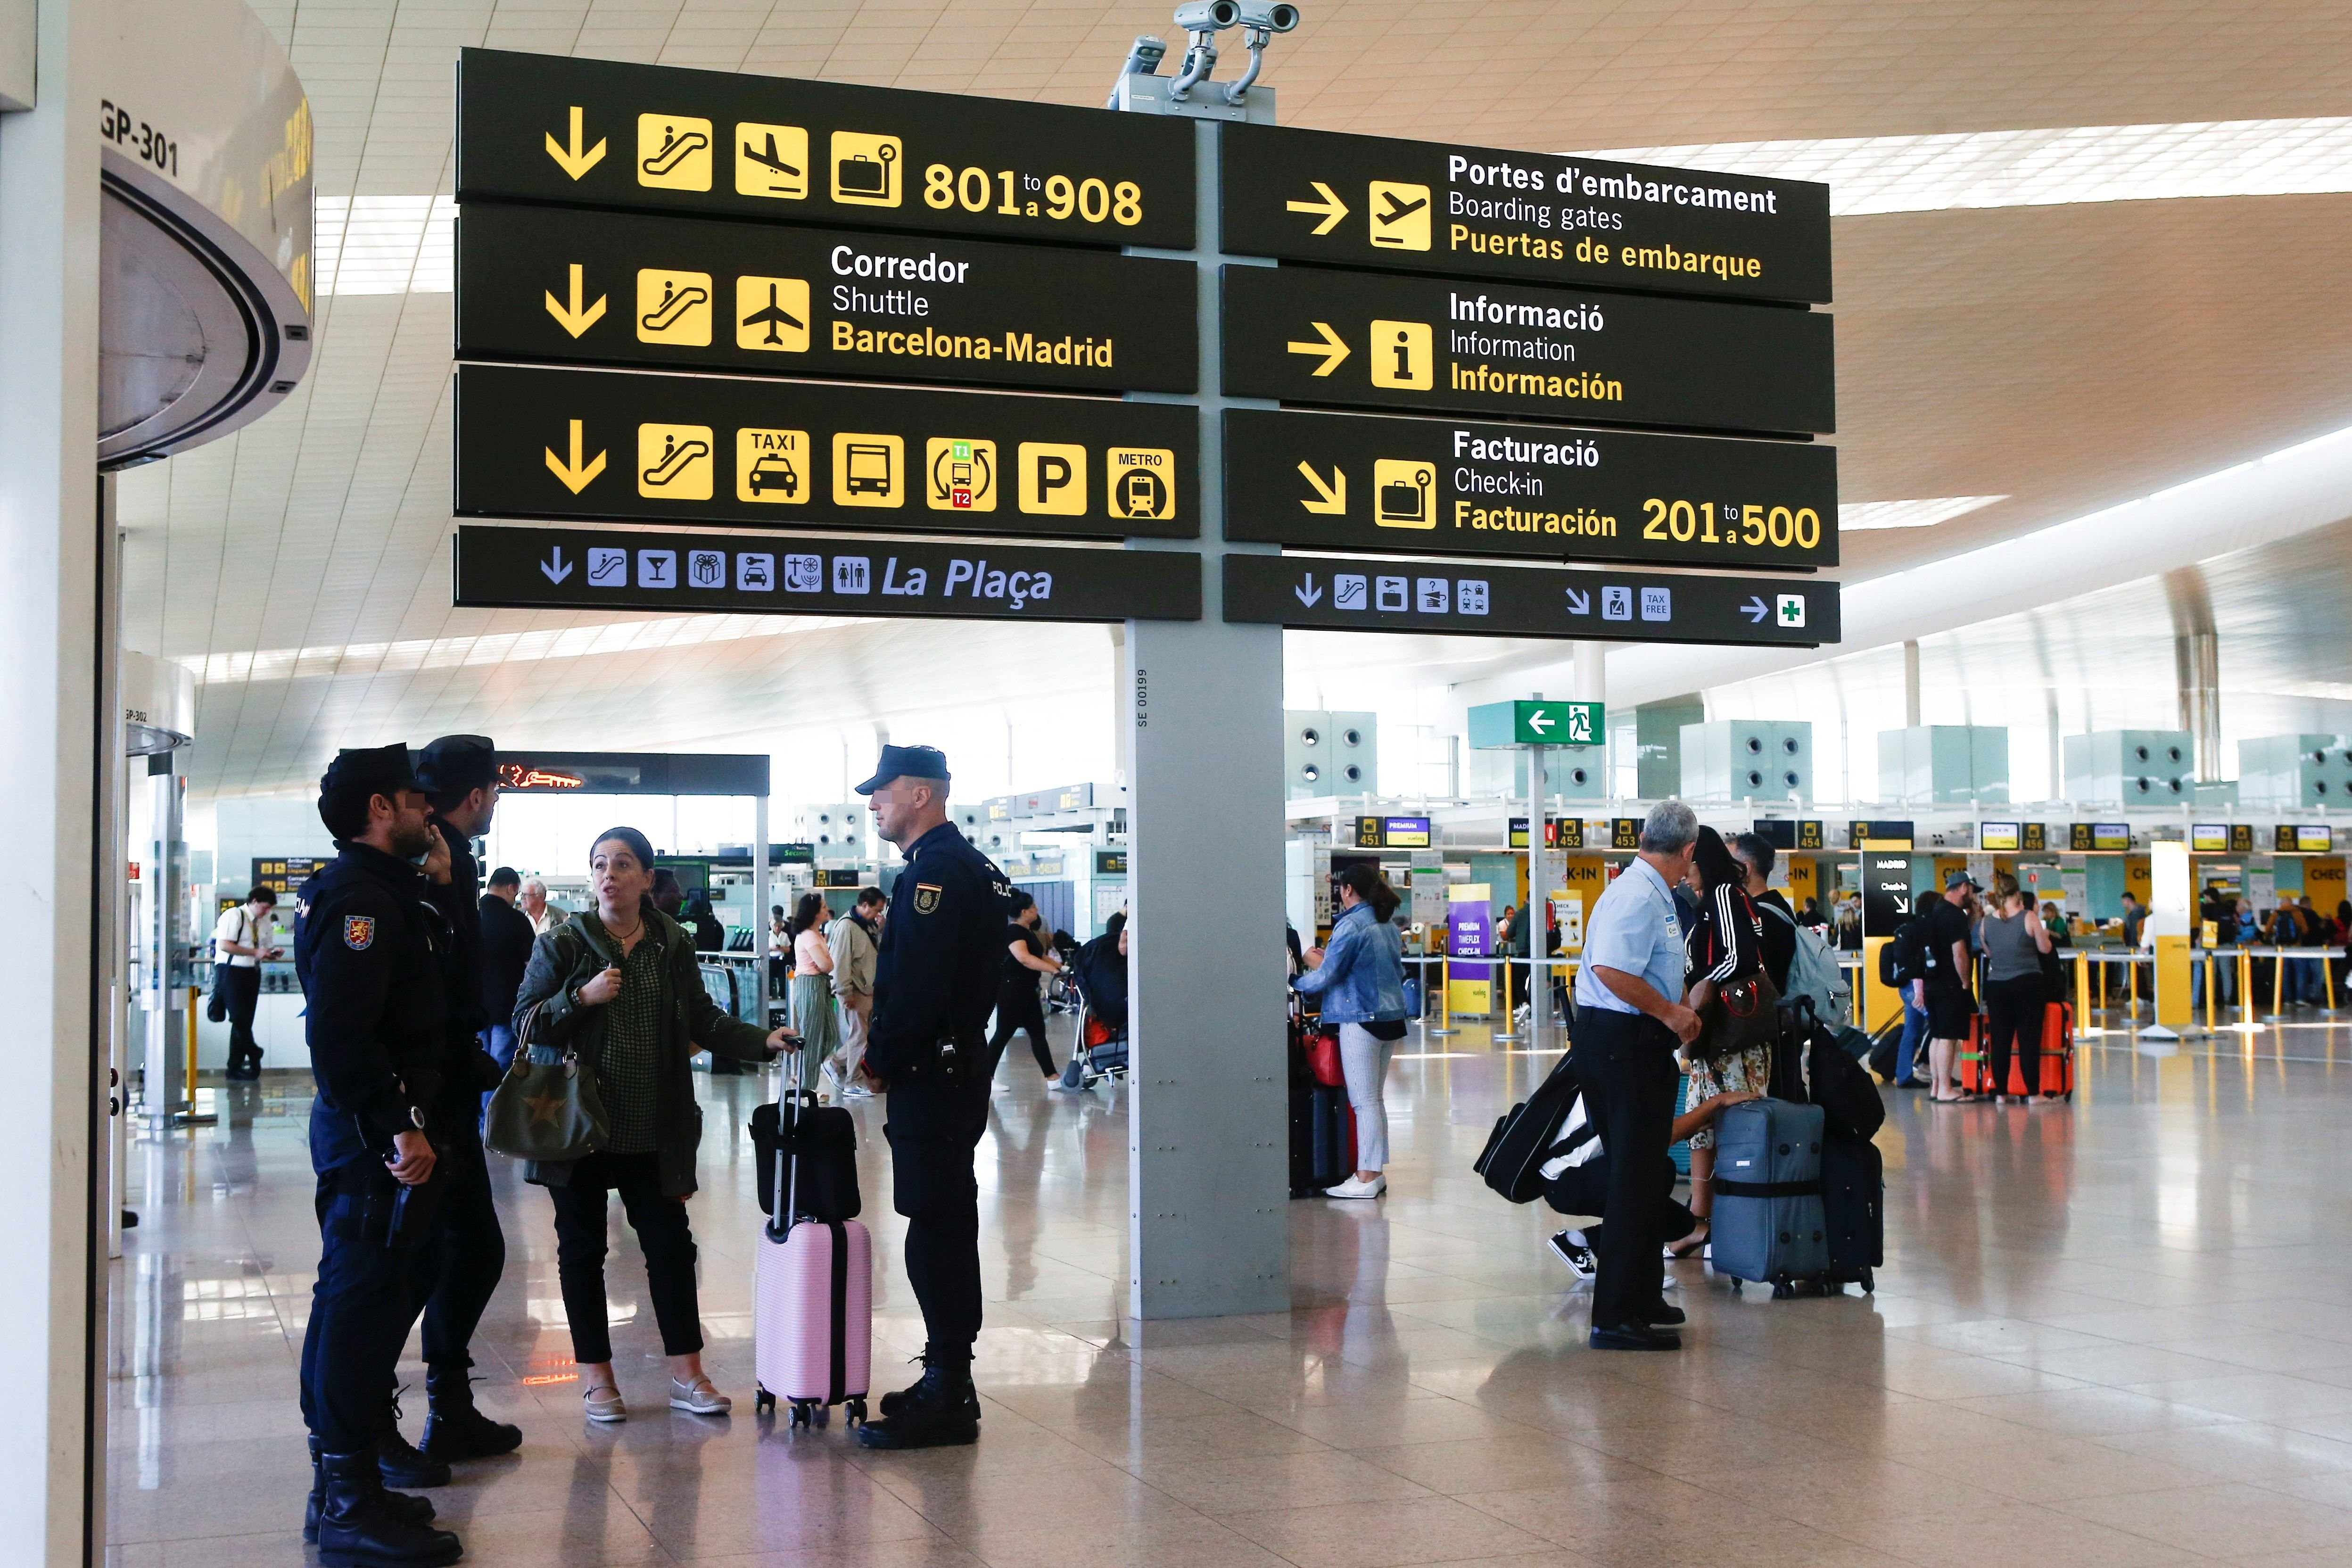 Els passatgers a l'aeroport del Prat cauen un 20% pel coronavirus